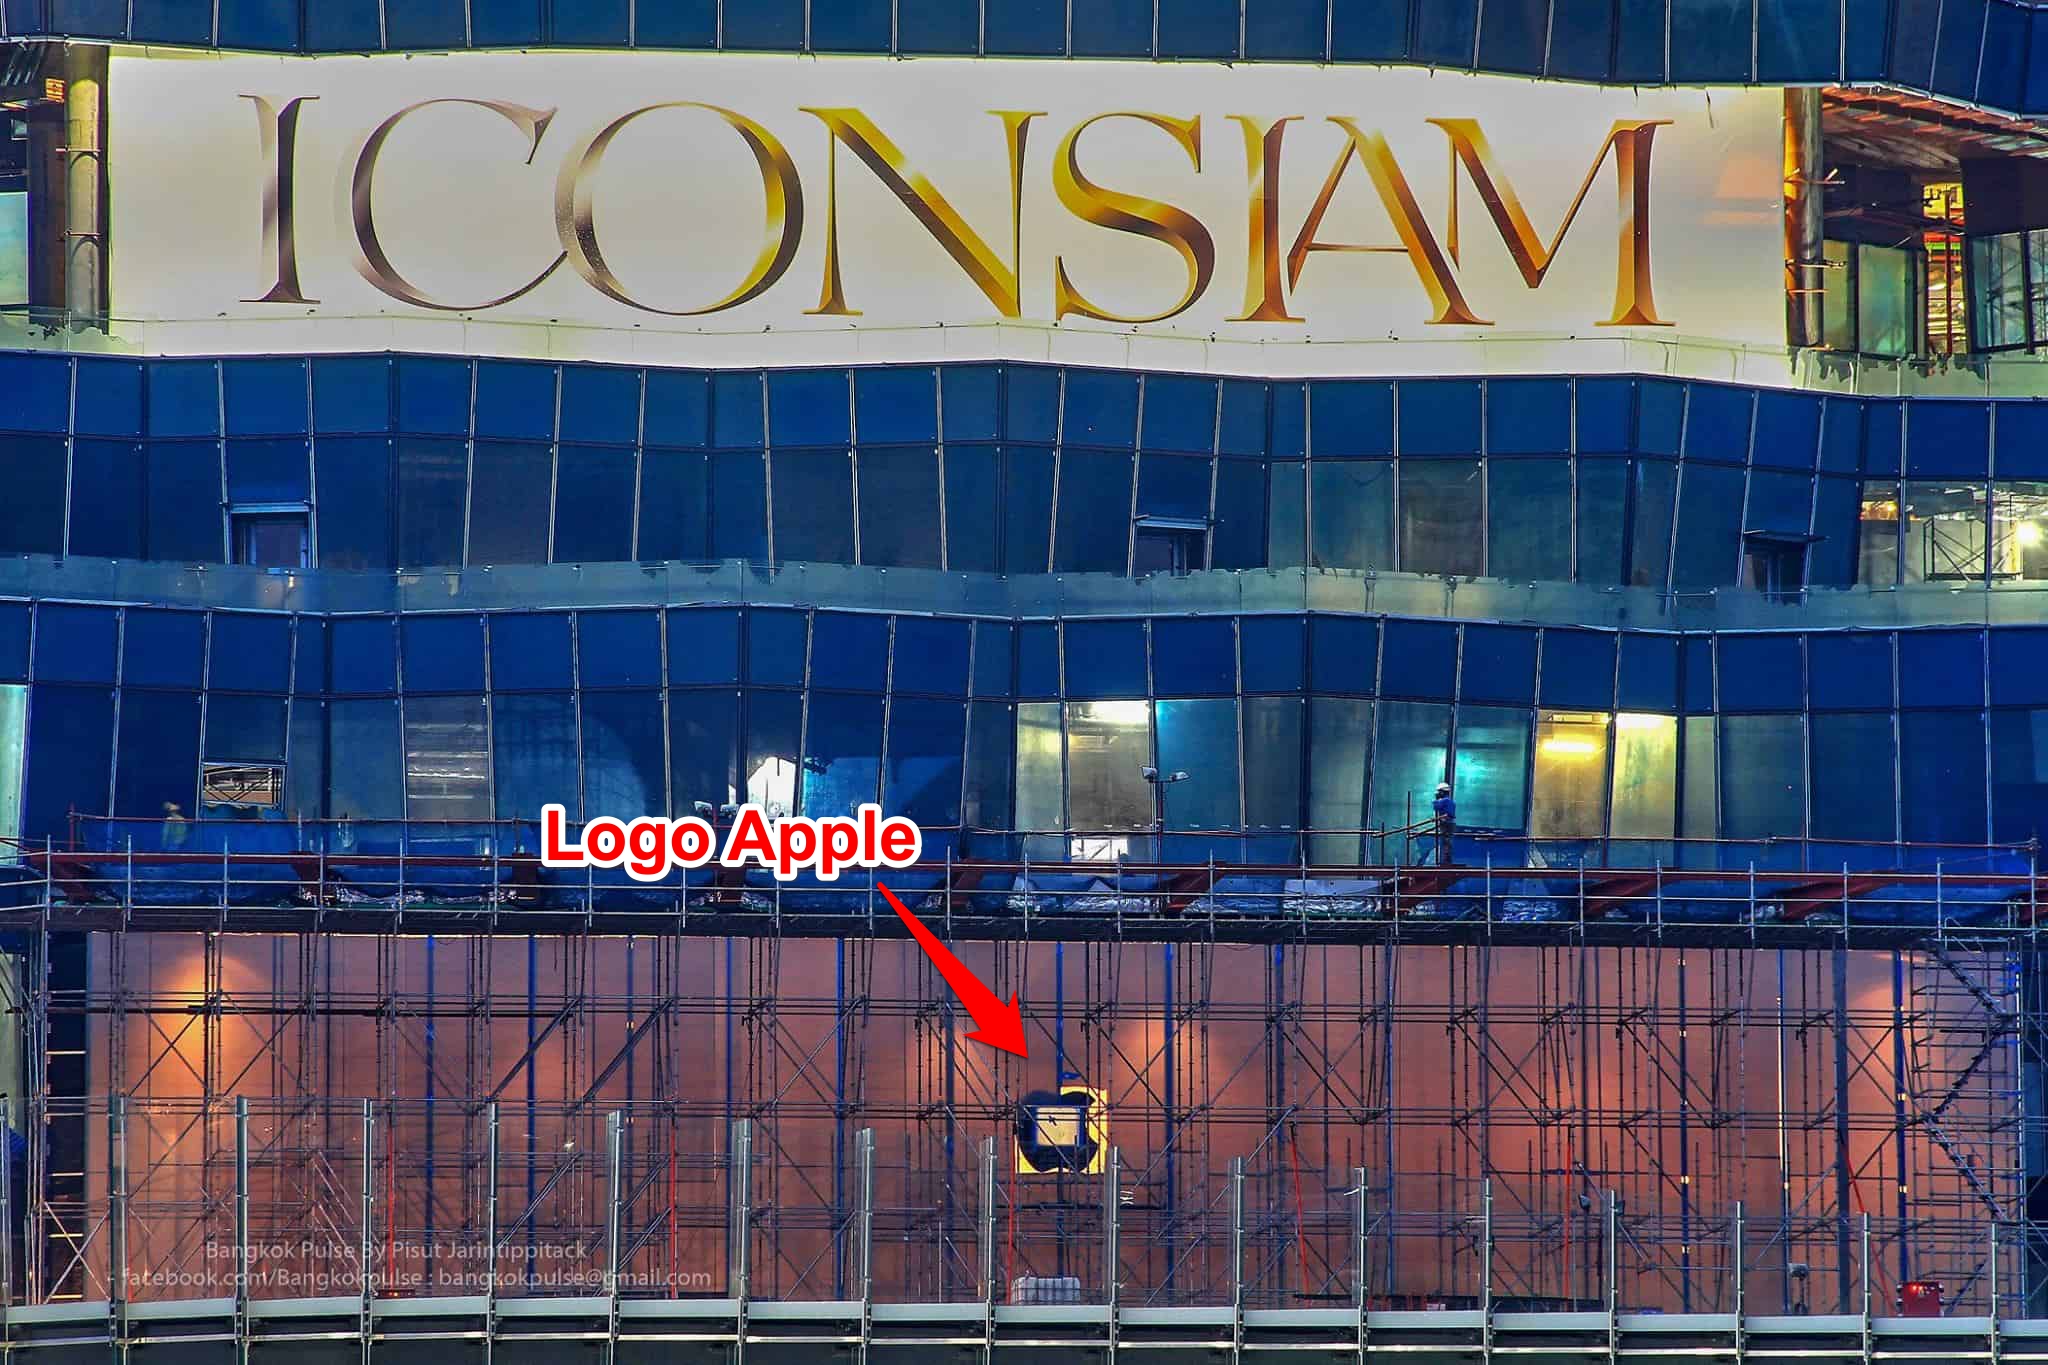 Apple Store đầu
tiên tại Thái Lan đã gần hoàn thiện, Việt Nam đến bao giờ!